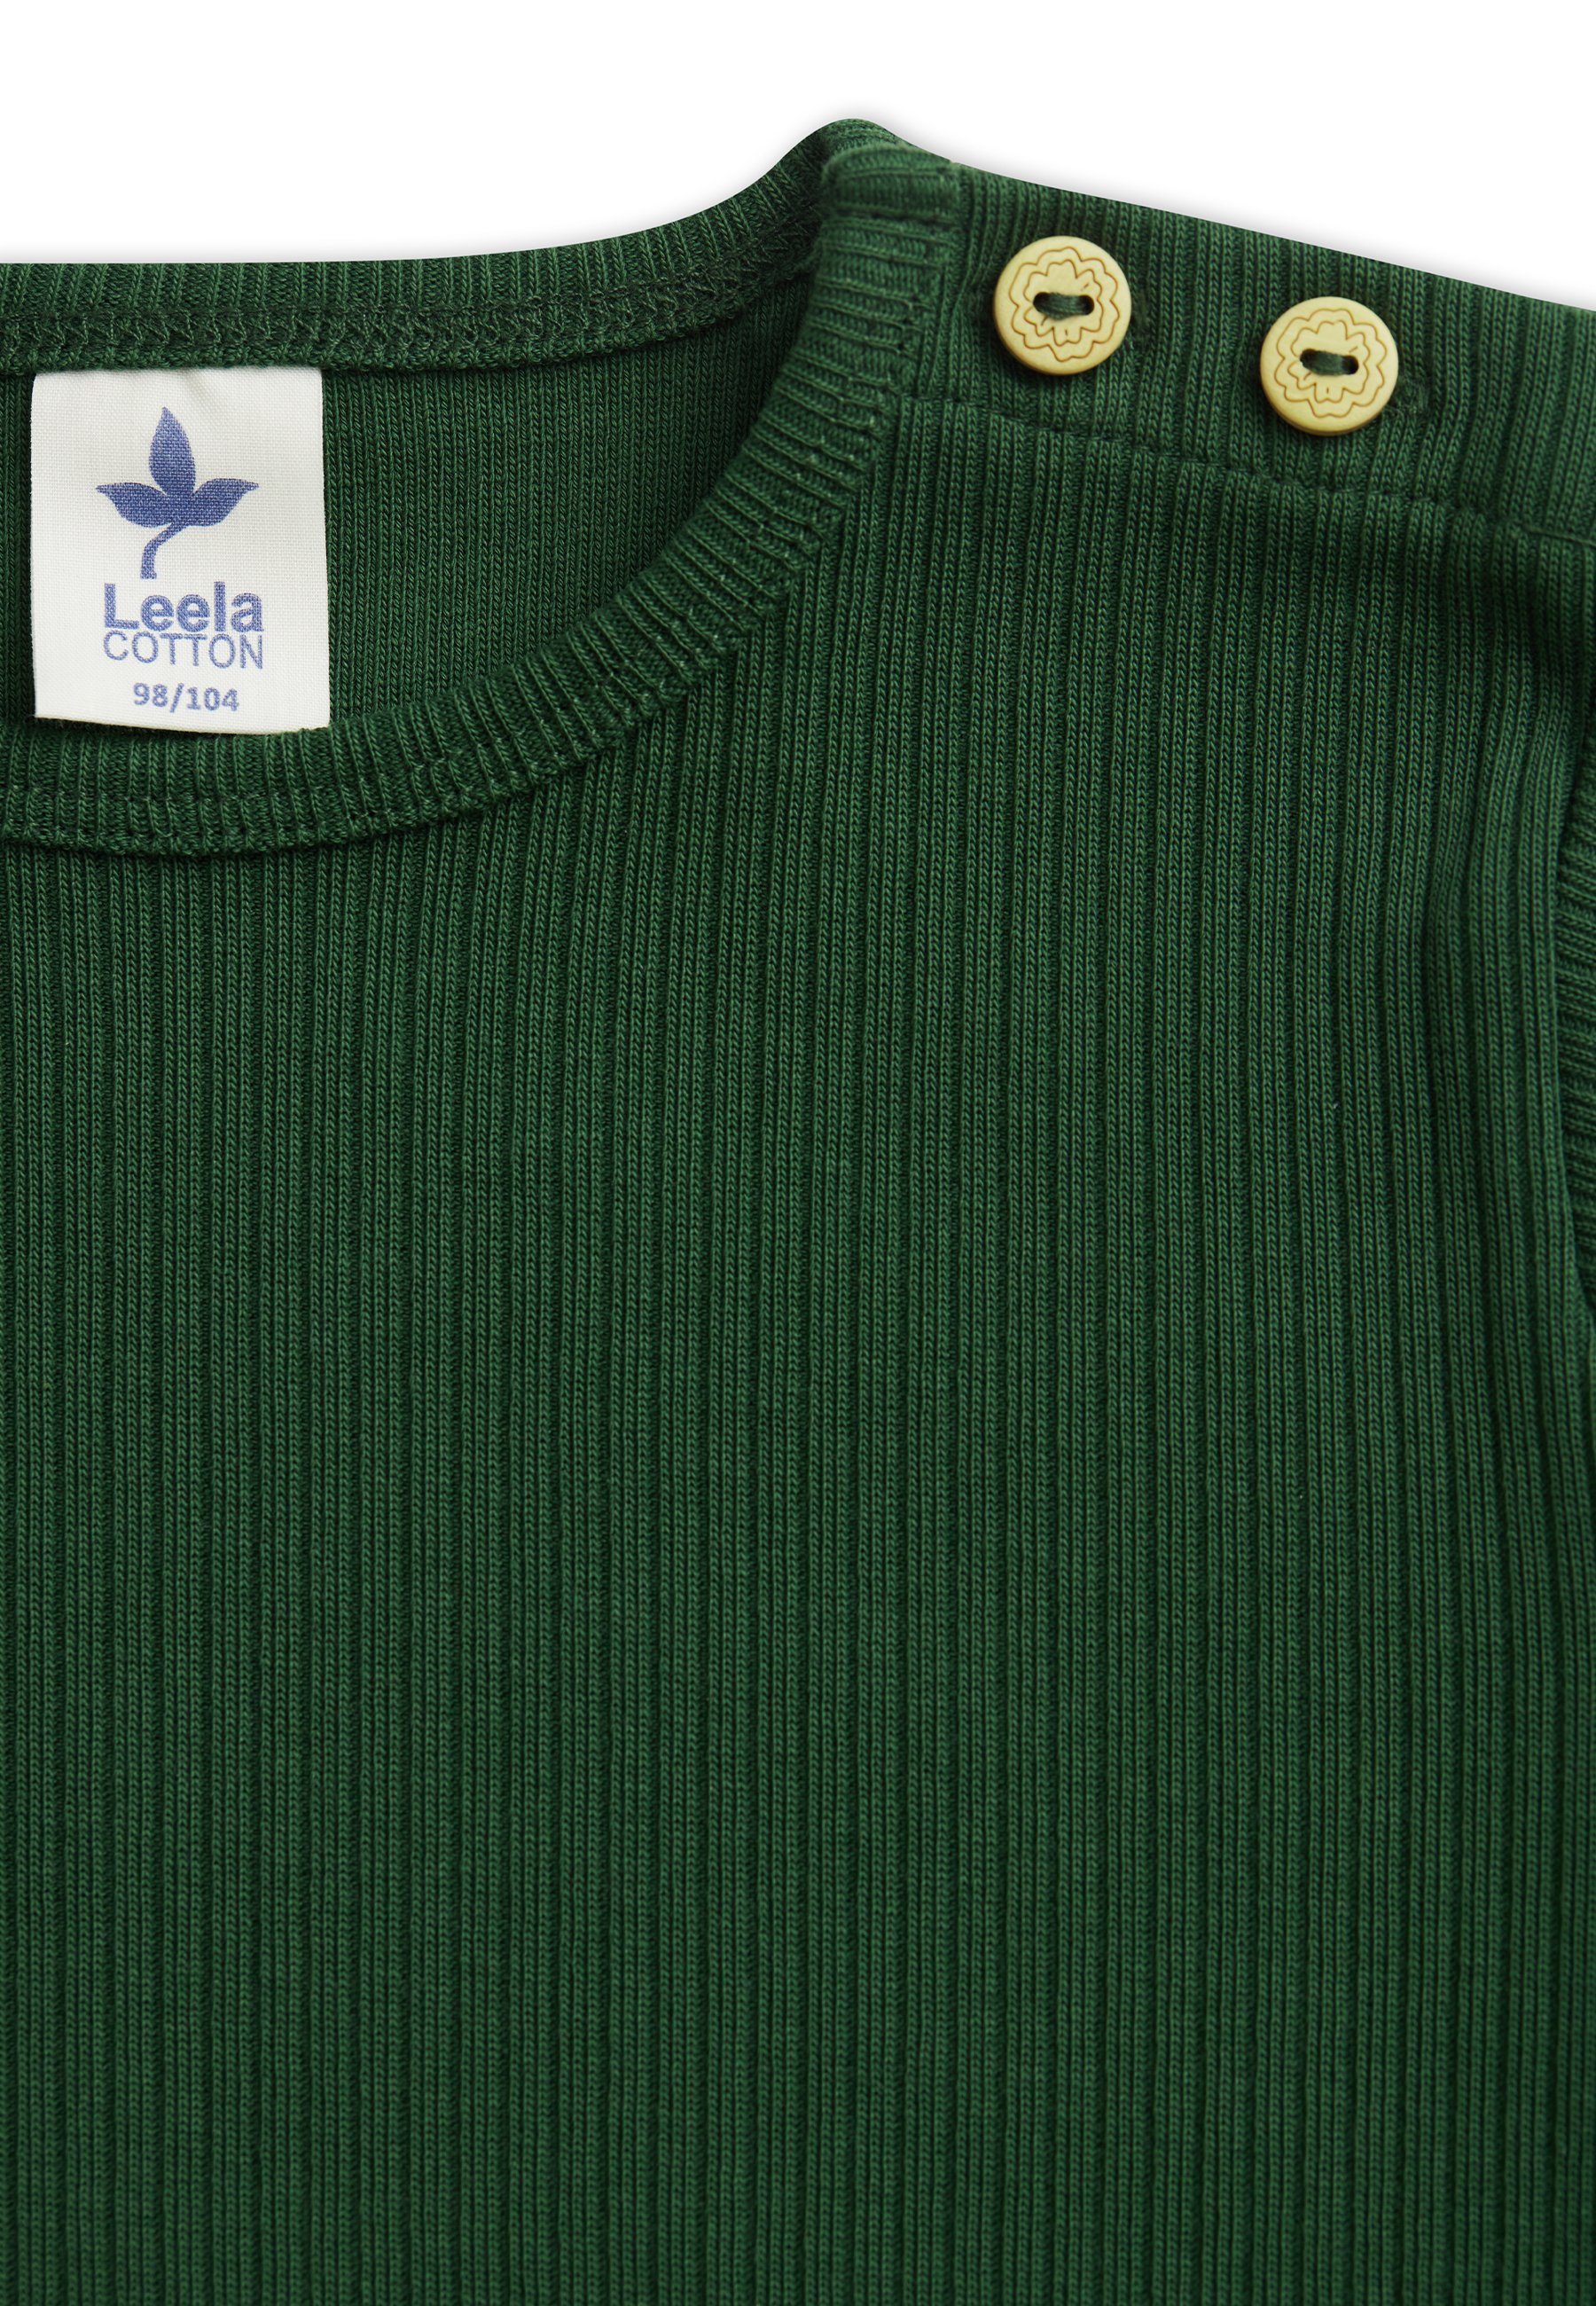 Leela COTTON Ripp-Shirts Langarmshirt